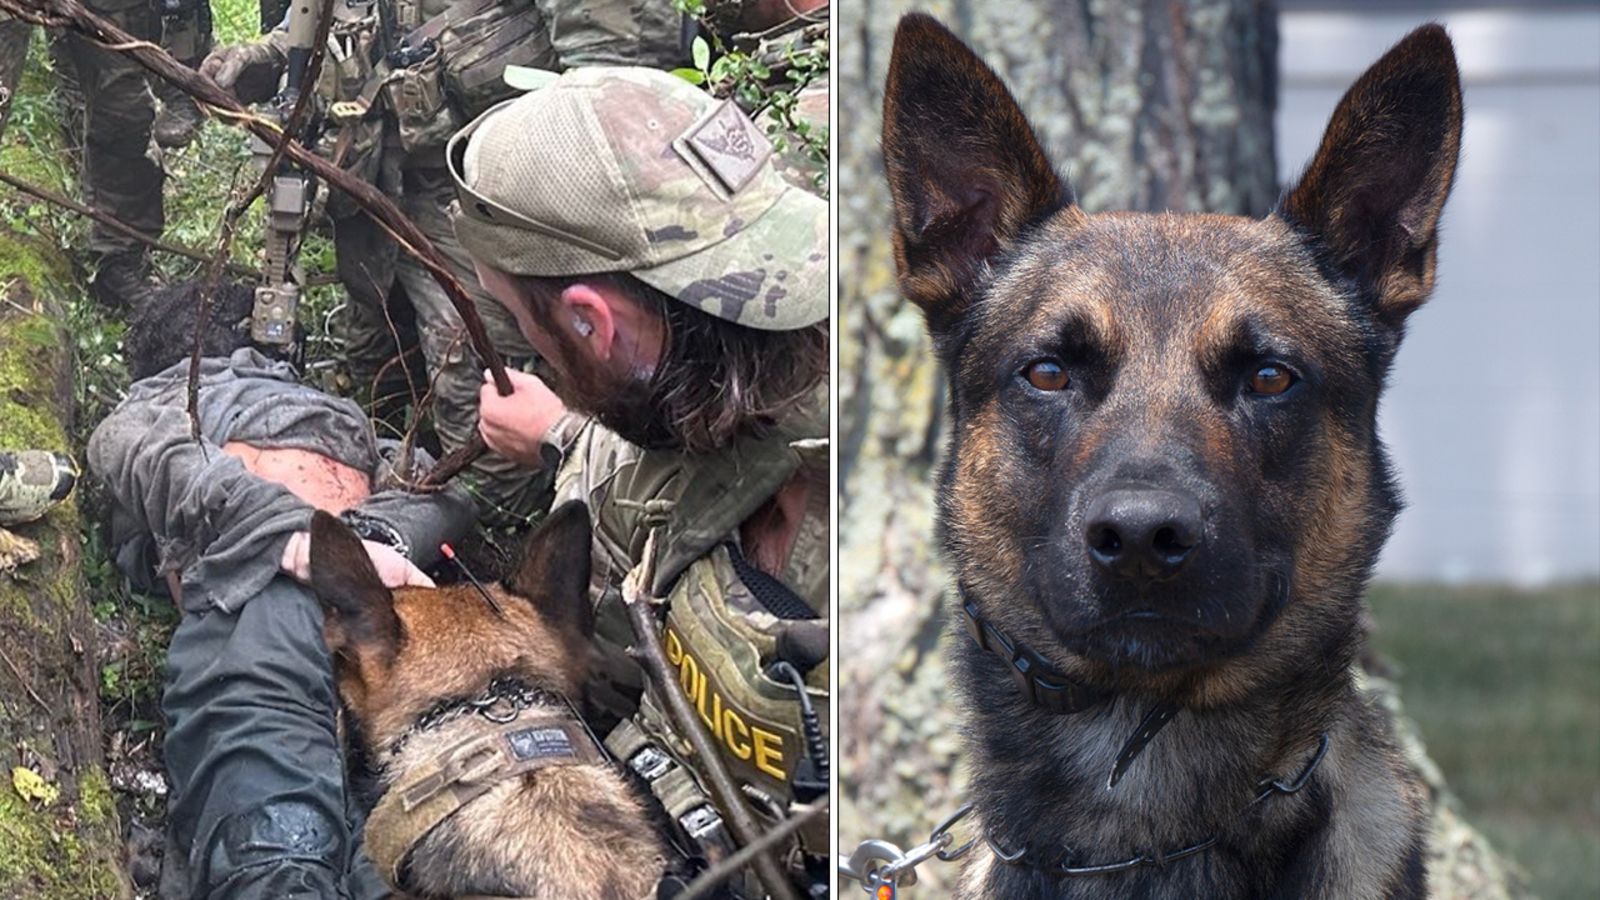 hero-k-9-dog-captures-escaped-prisoner-danelo-cavalcante-after-intense-training